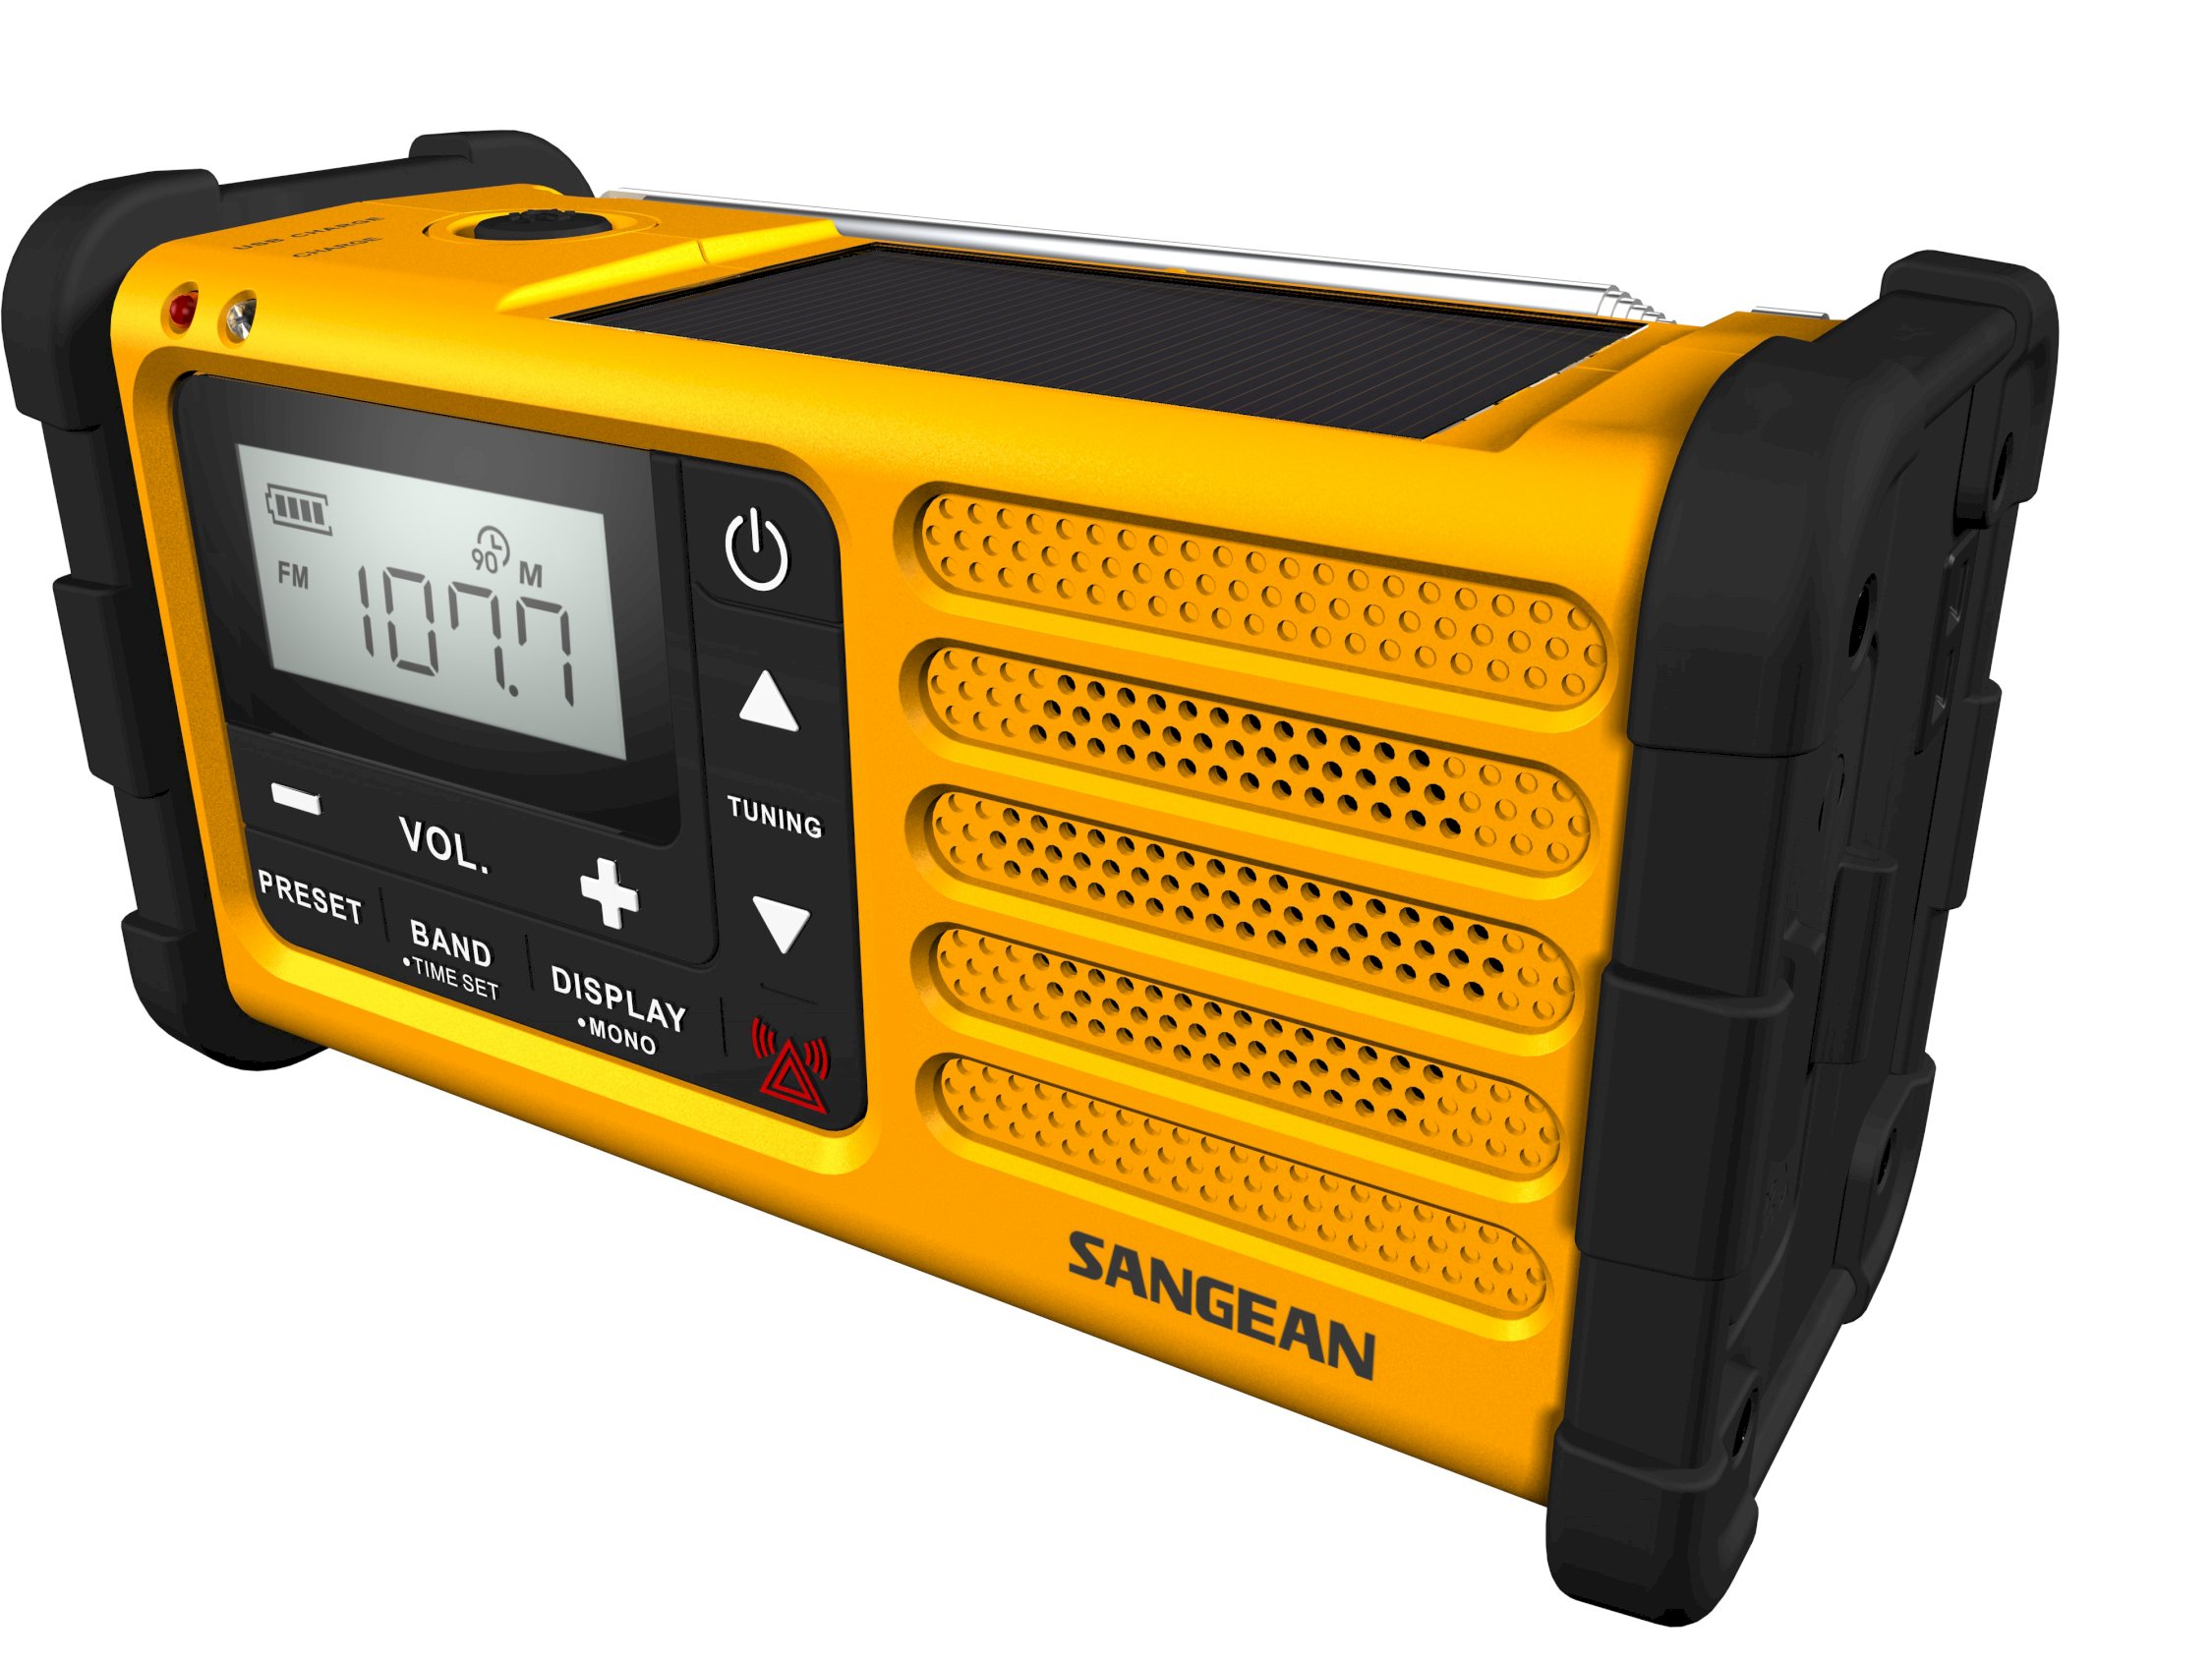 MMR-88, dynamo radio FM/AM, solar, yellow